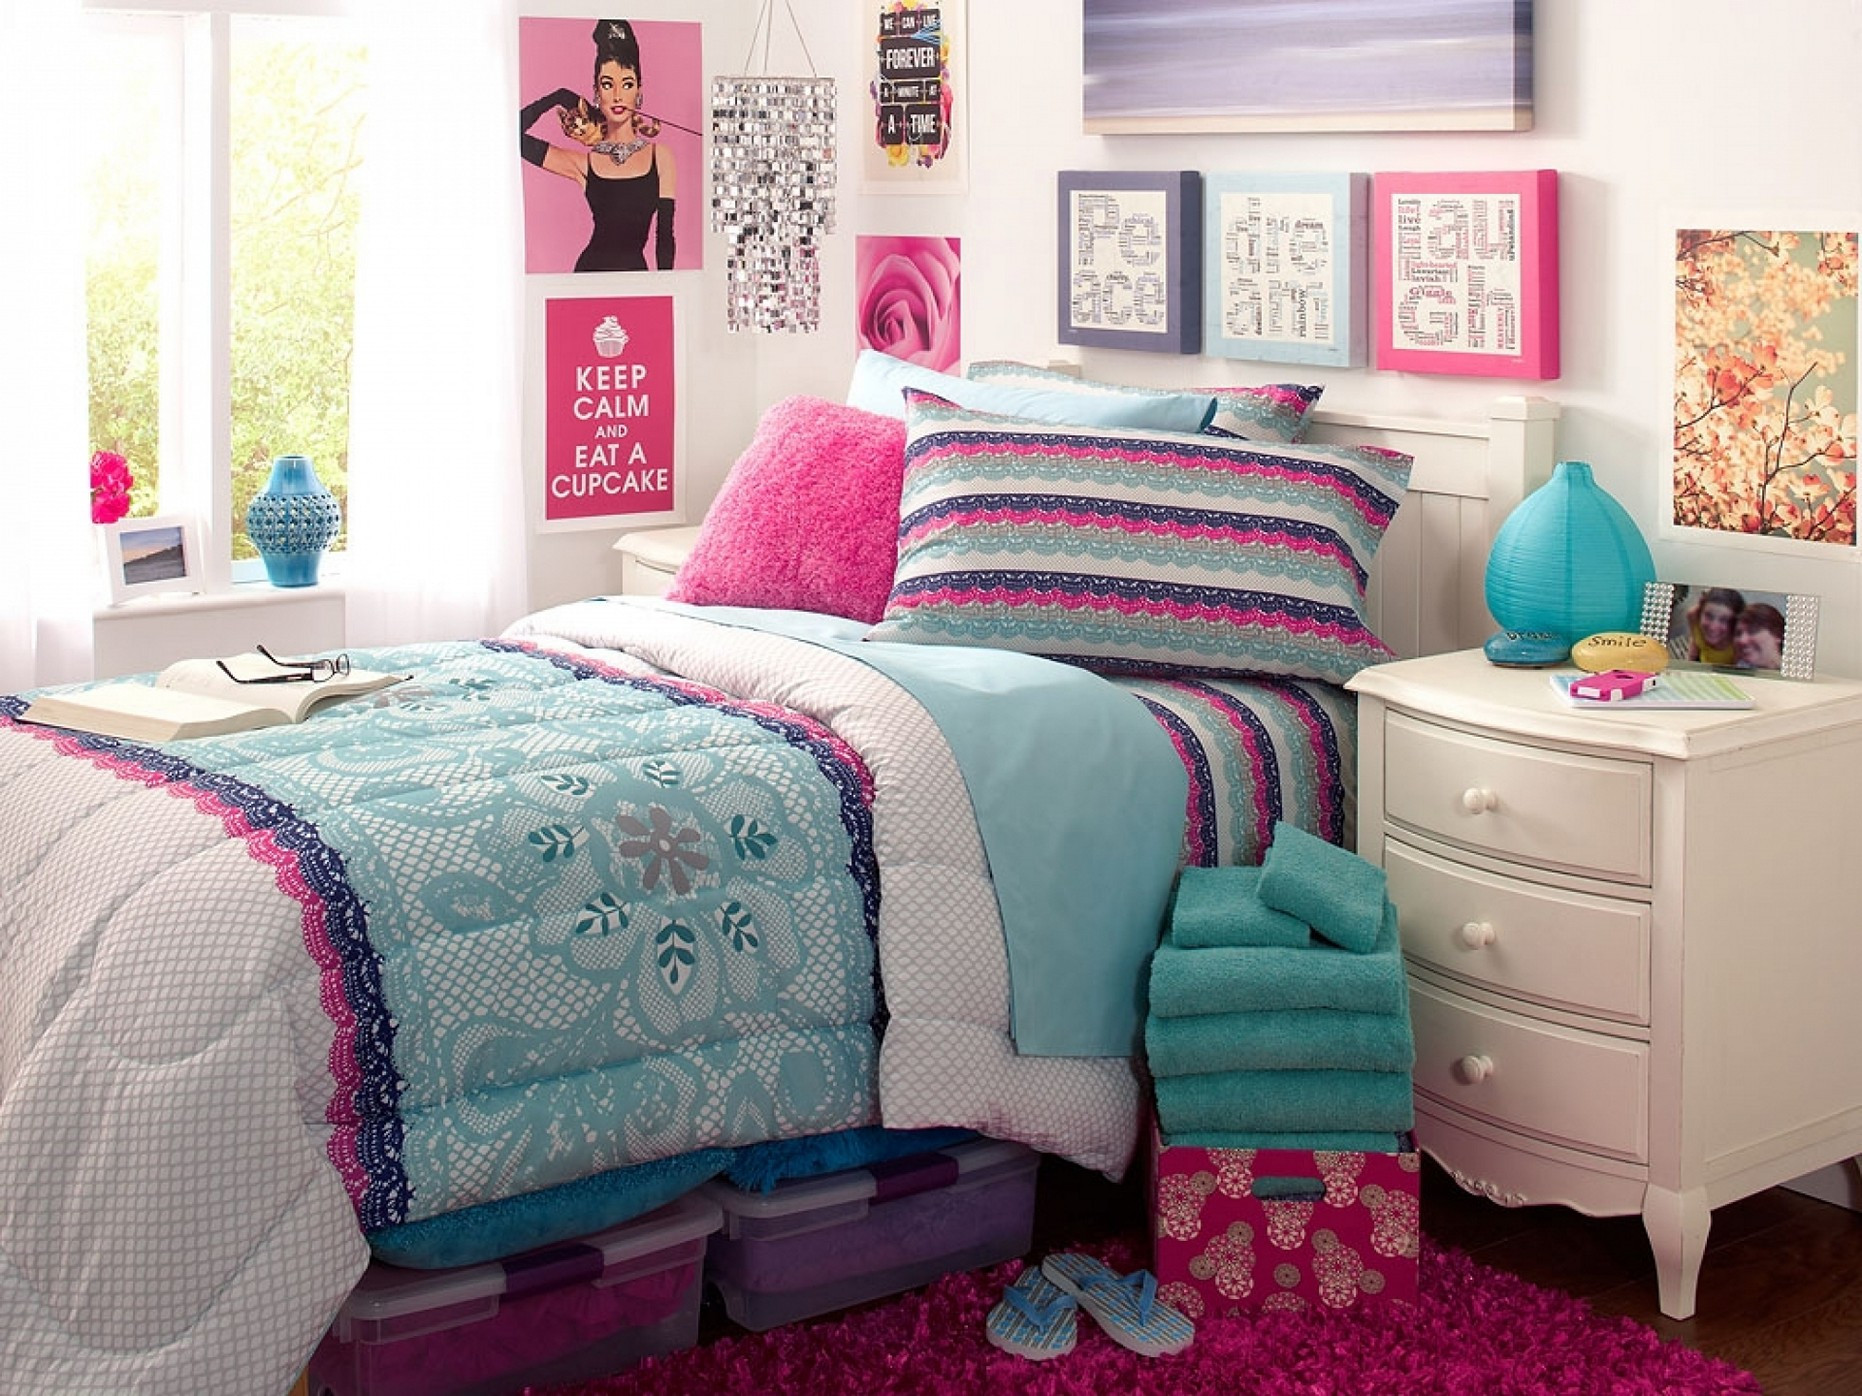 Kids' Room Curtains Ideas
 Teenage Girl Bedroom Design Ideas MidCityEast